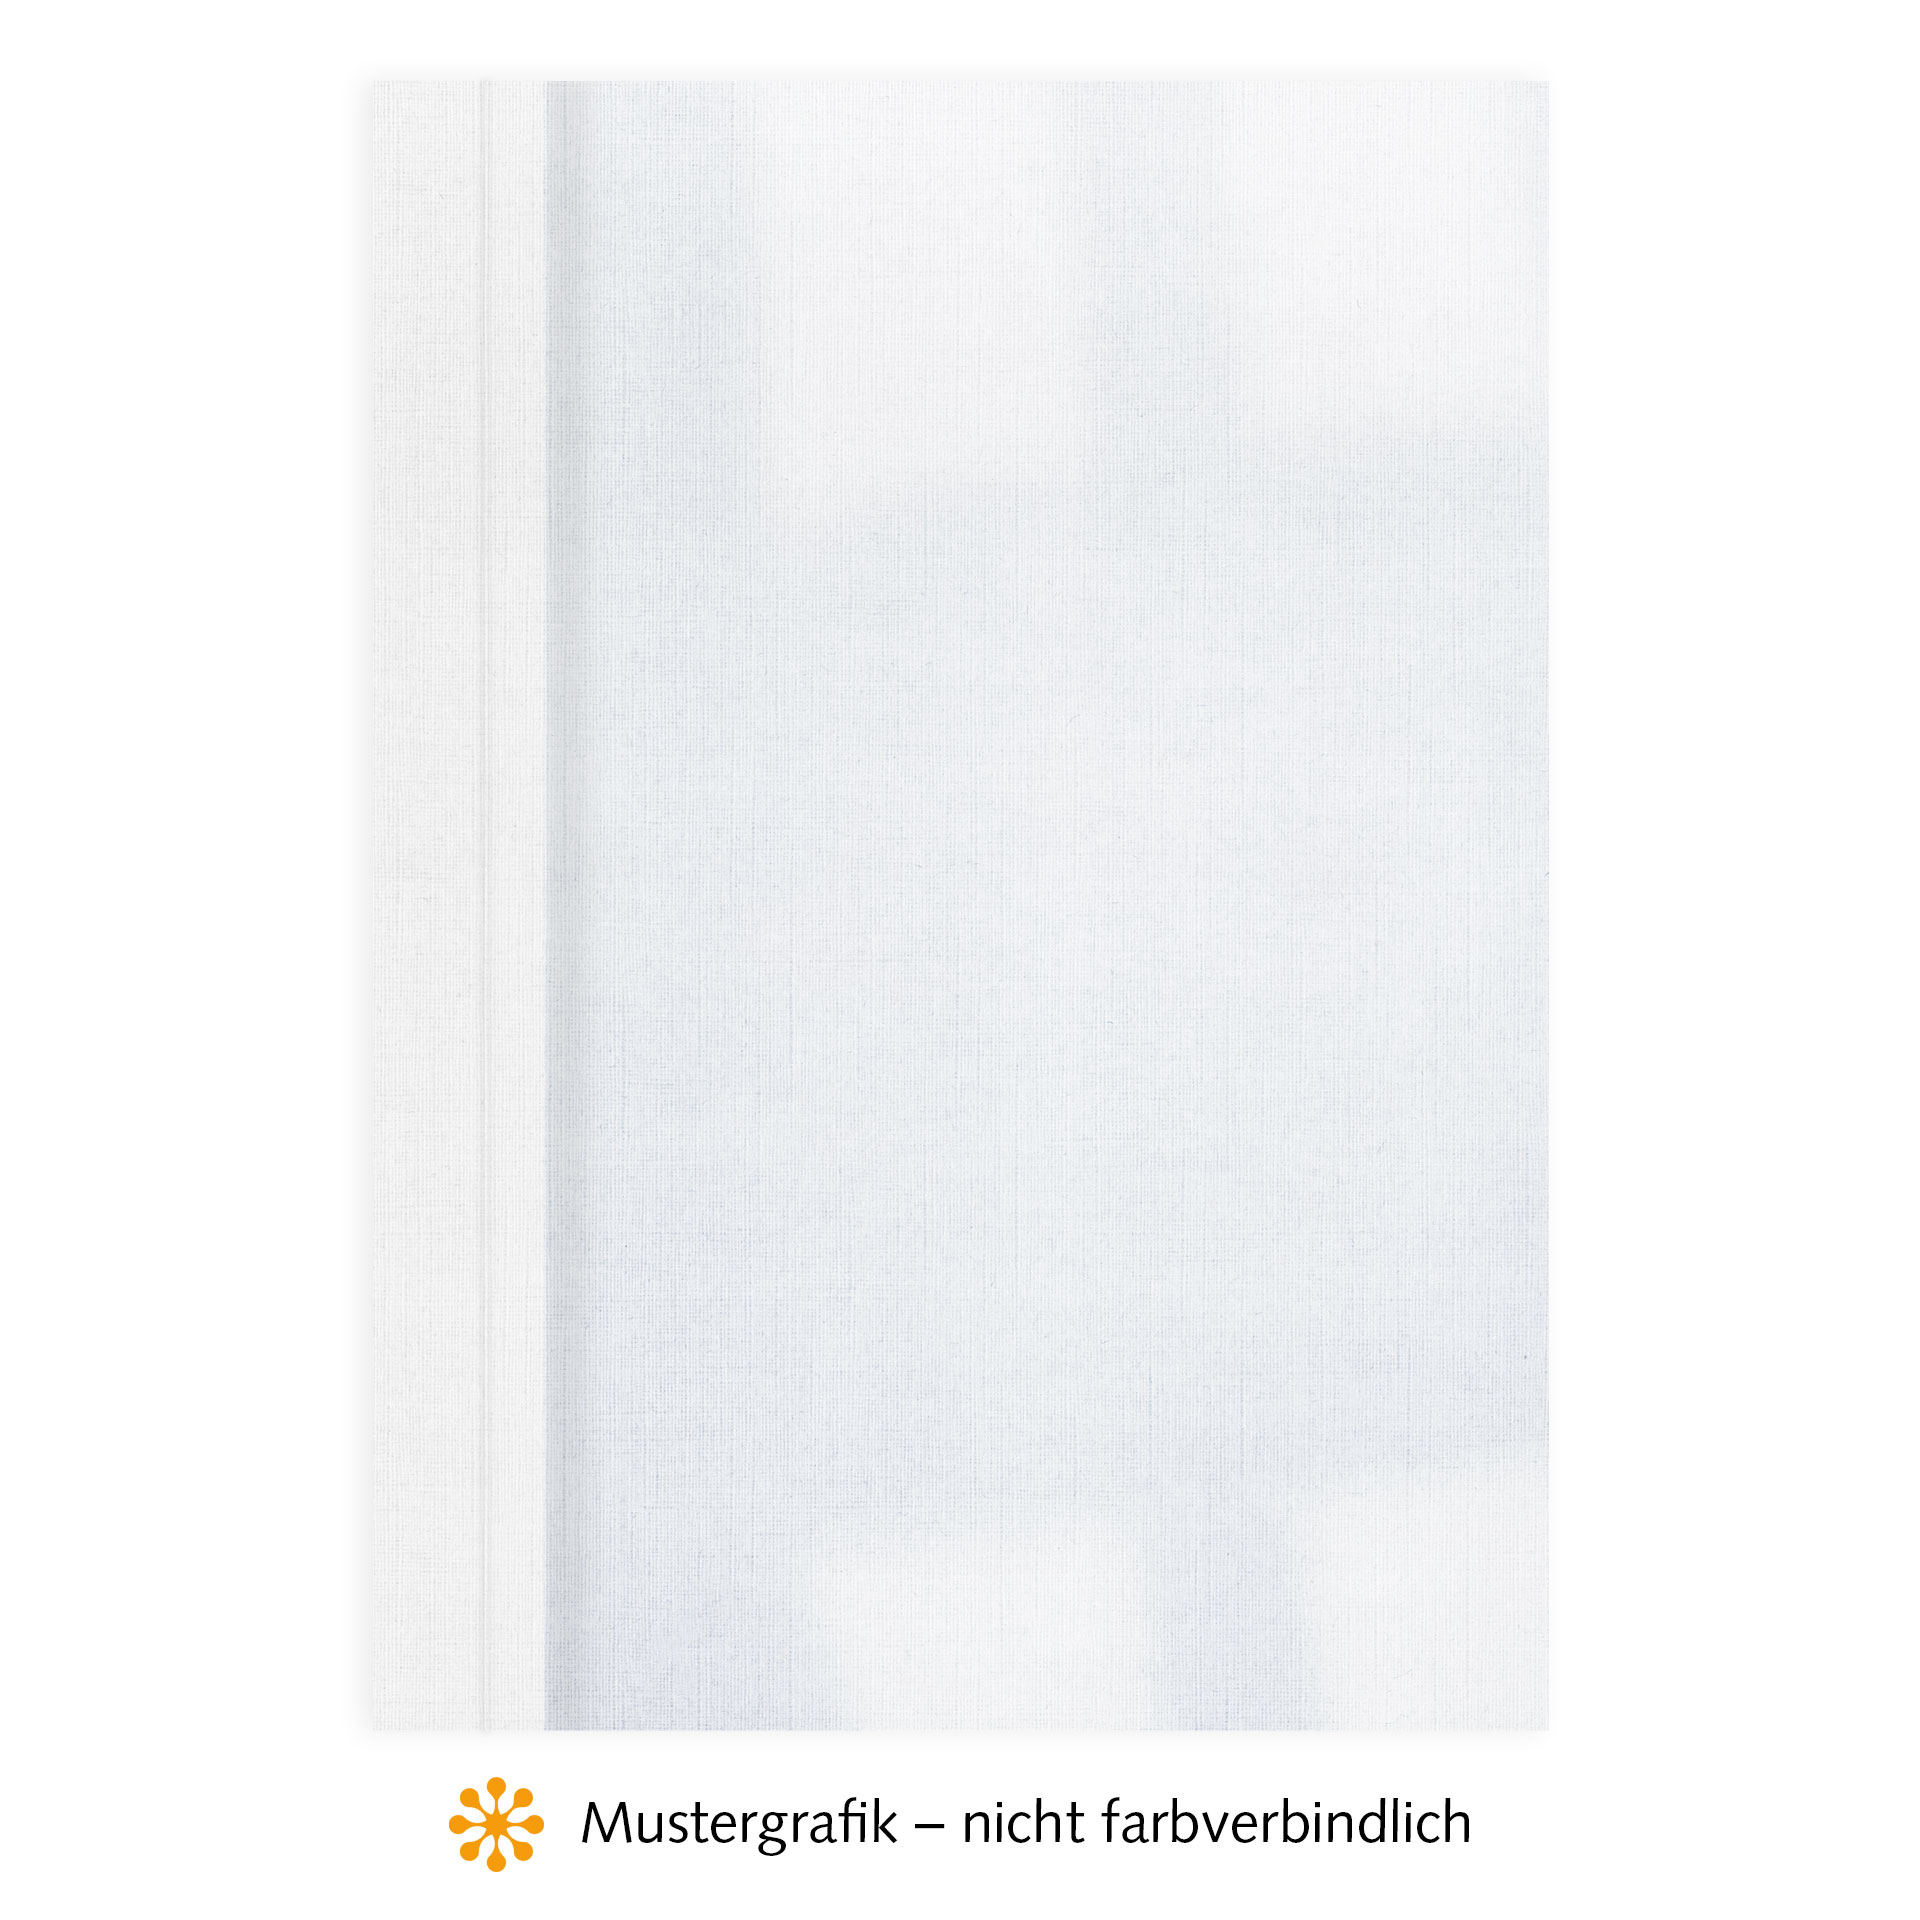 Ösenmappen DUO Cover, Vorderseite Folie KLAR transparent, Rückseite Karton Leinen, Weiß, 4 mm, 31 bis 40 Blatt